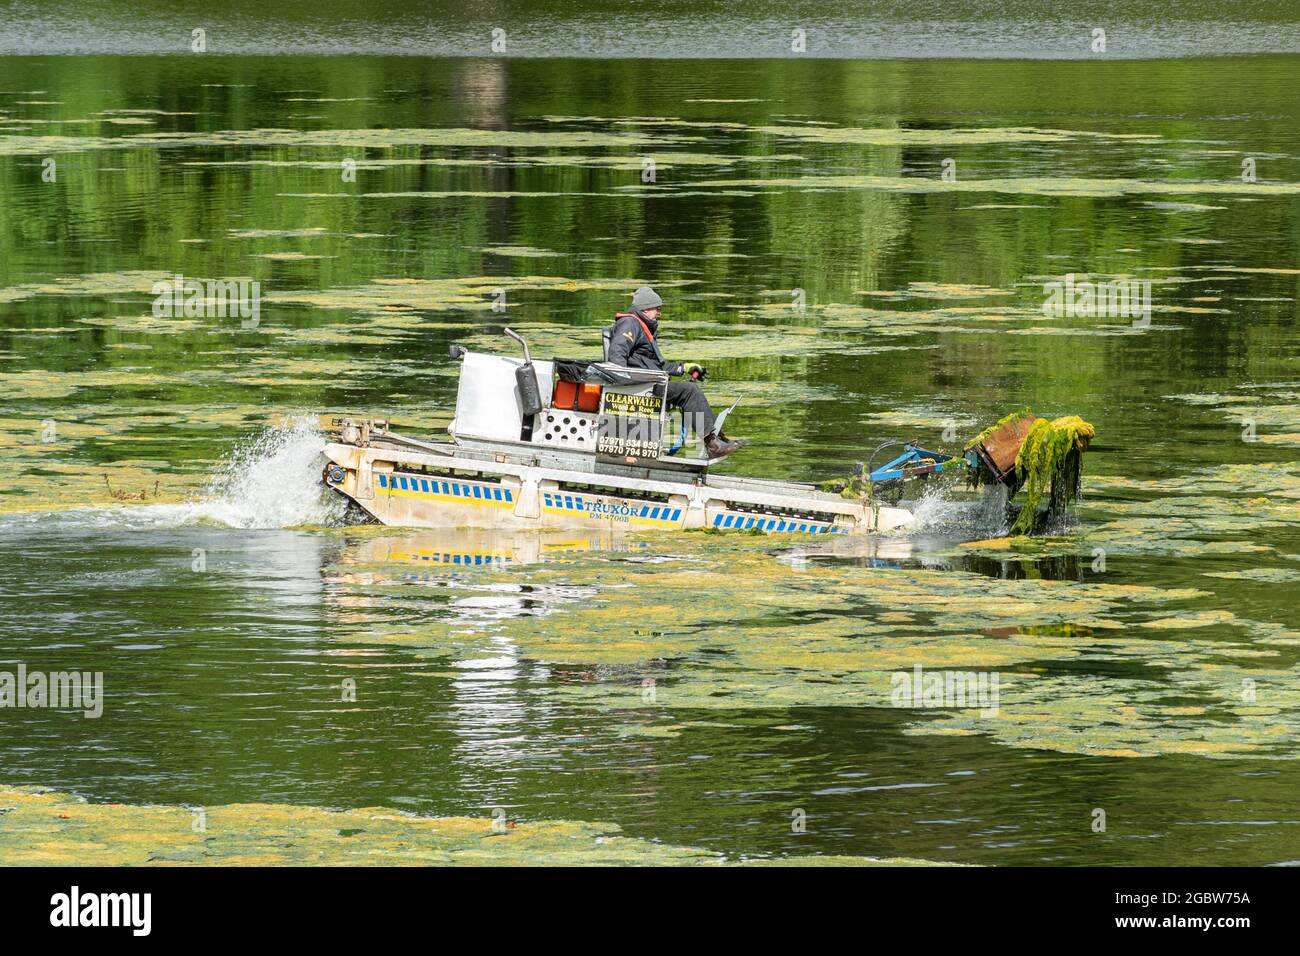 Mann, der an einem Amphibienfahrzeug arbeitet, das als truxor bezeichnet wird und das Teichunkraut oder Algen aus einem See entfernt, Großbritannien Stockfoto